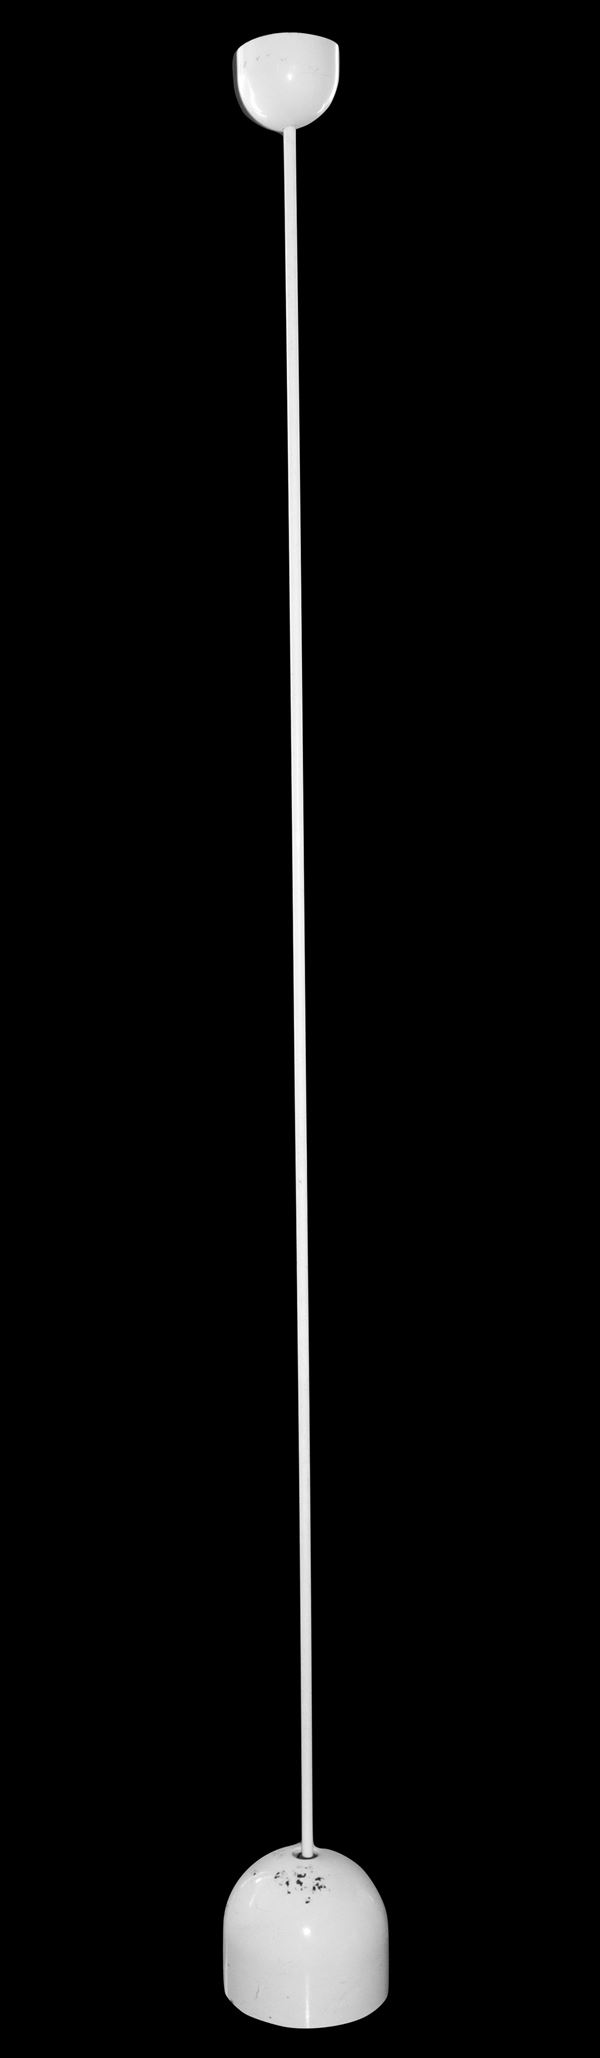 Lumi Milano - Piantana a stelo laccata bianco, modello Ipotenusa